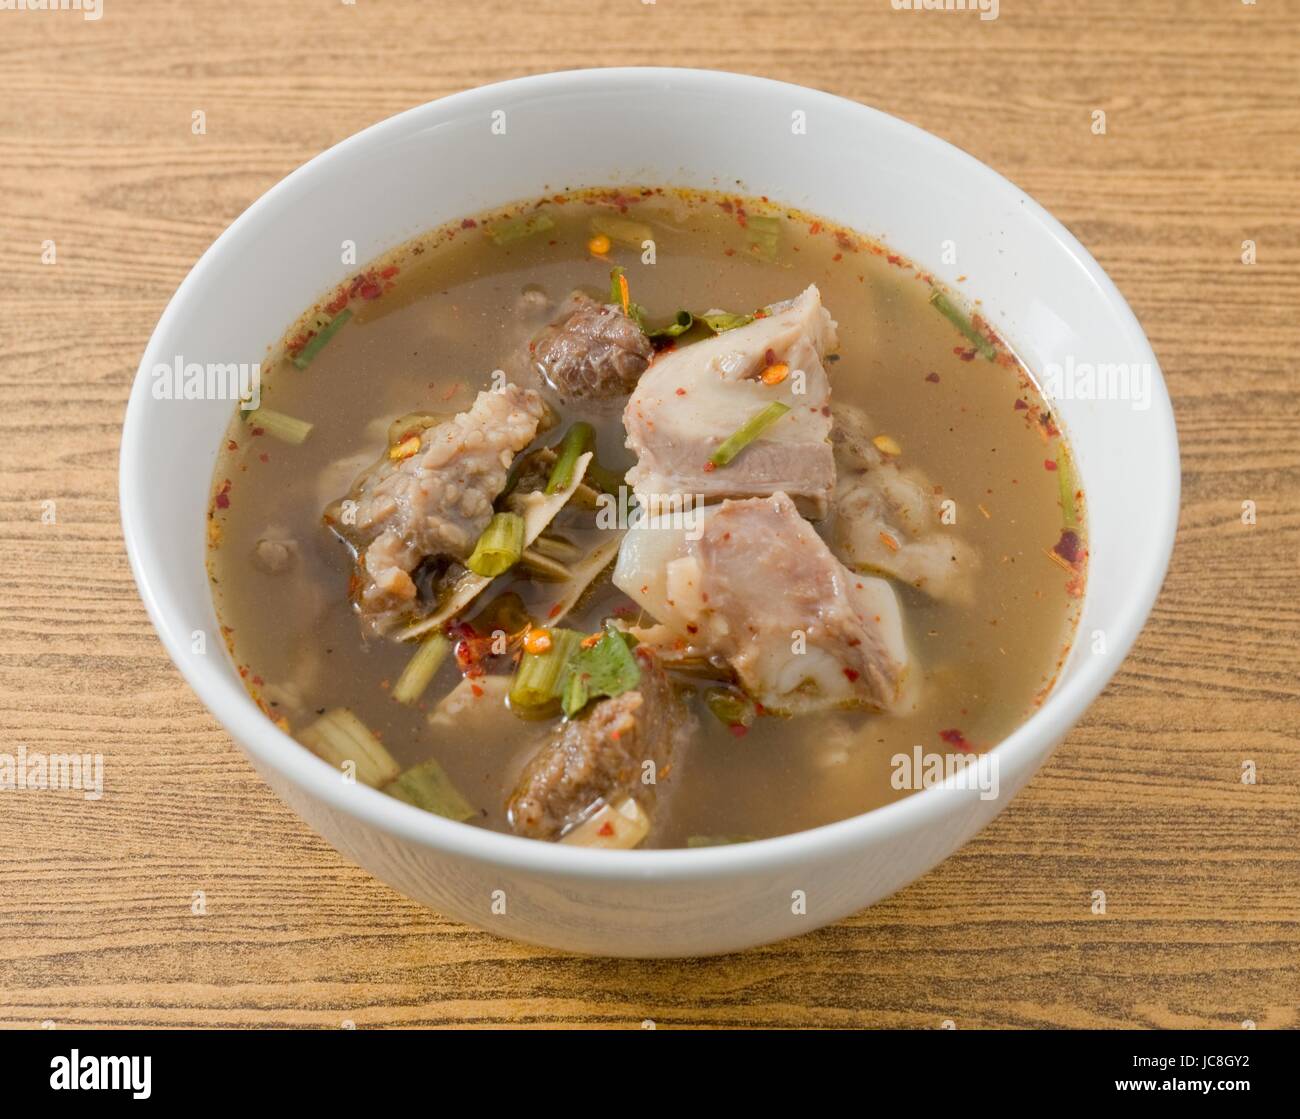 Cucina thailandese e cibo delizioso chiaro thai piccante e aspro zuppa con le interiora dei bovini in una ciotola. Foto Stock